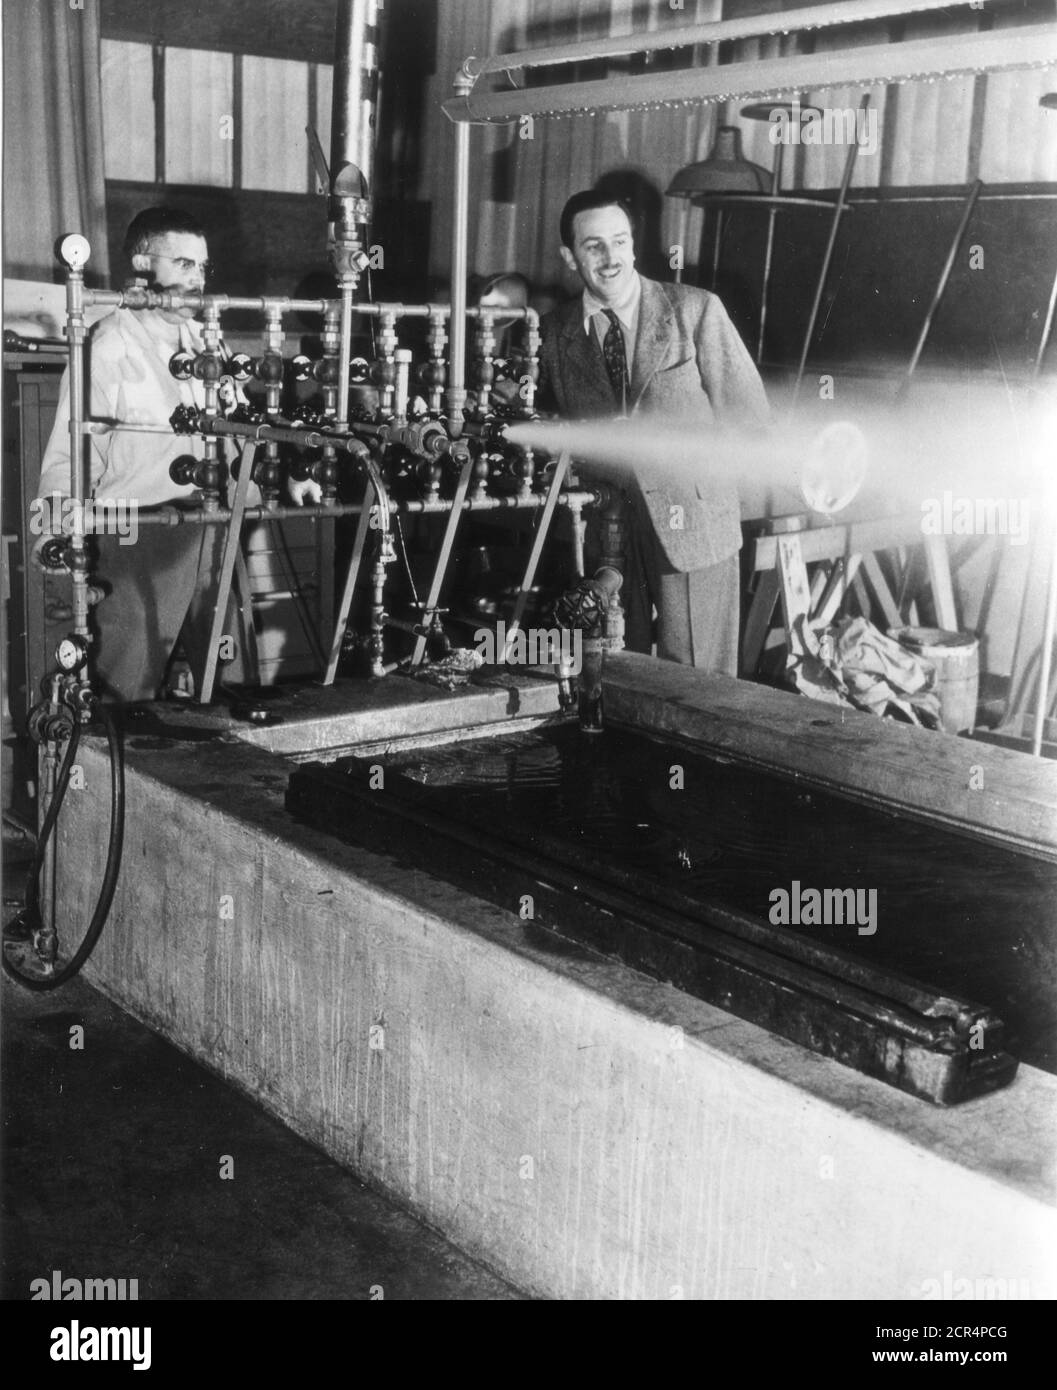 Im Tonstudio untersucht Walt Disney eine komplizierte Dampfmaschine, die, wenn sie richtig aufgenommen wird, zum Whistle Blast wird, Burbank, CA, 1943. (Foto von Office of war Information/RBM Vintage Images) Stockfoto